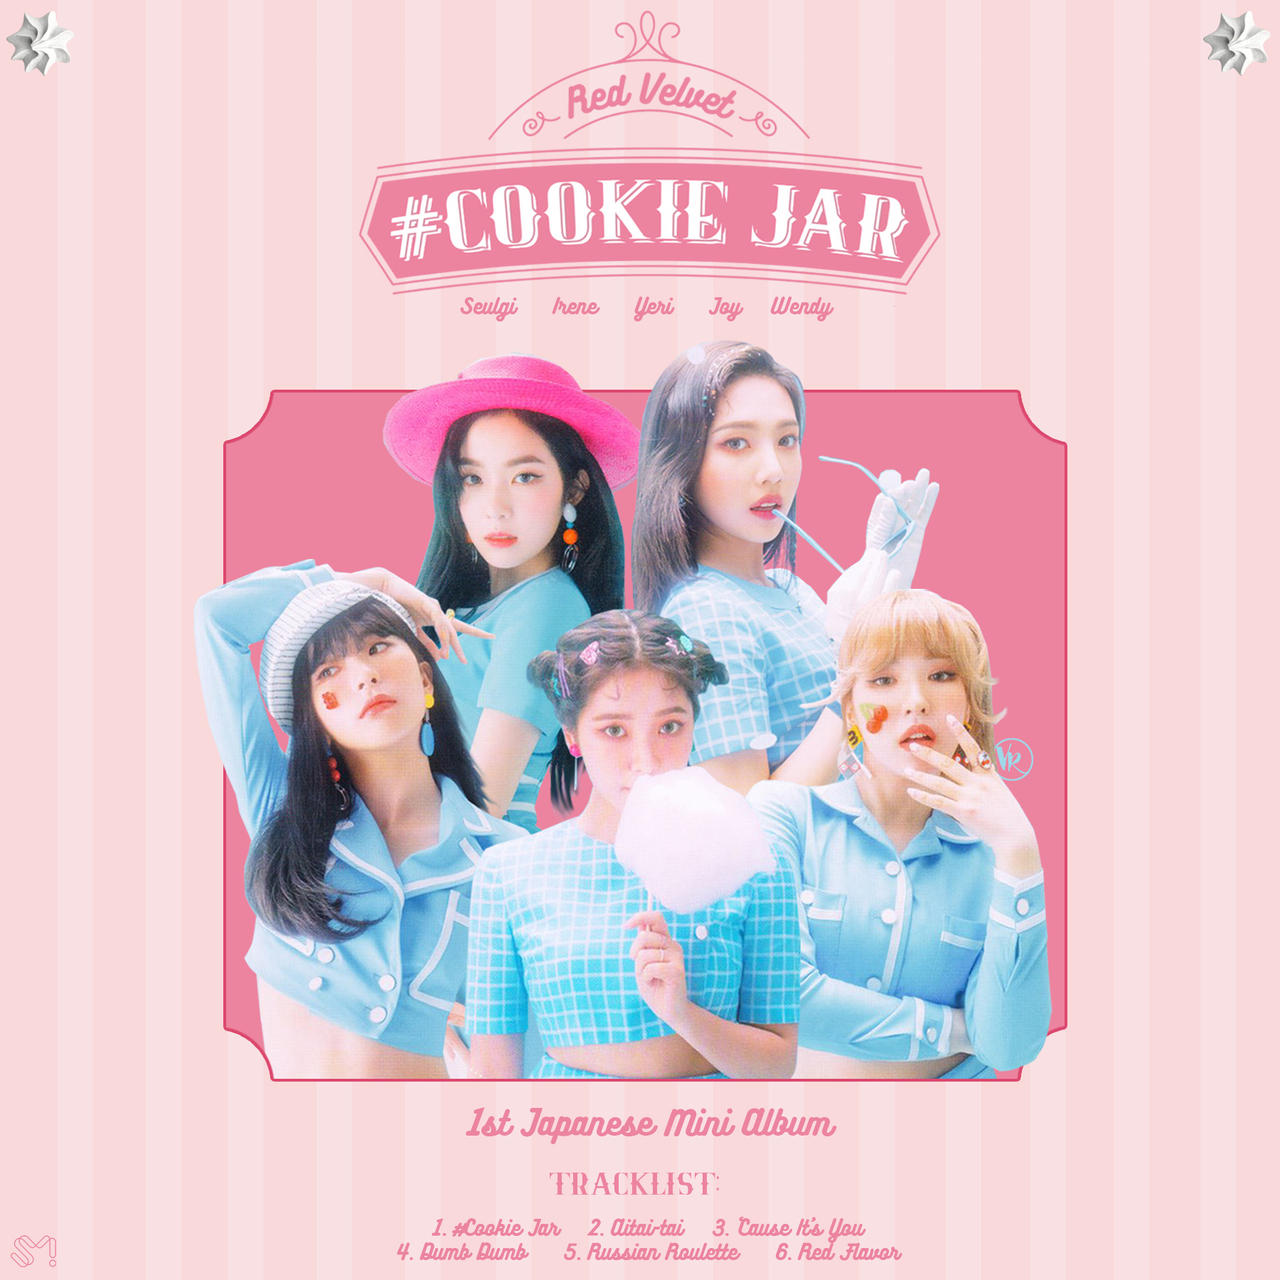 Red Velvet – Cookie Jar